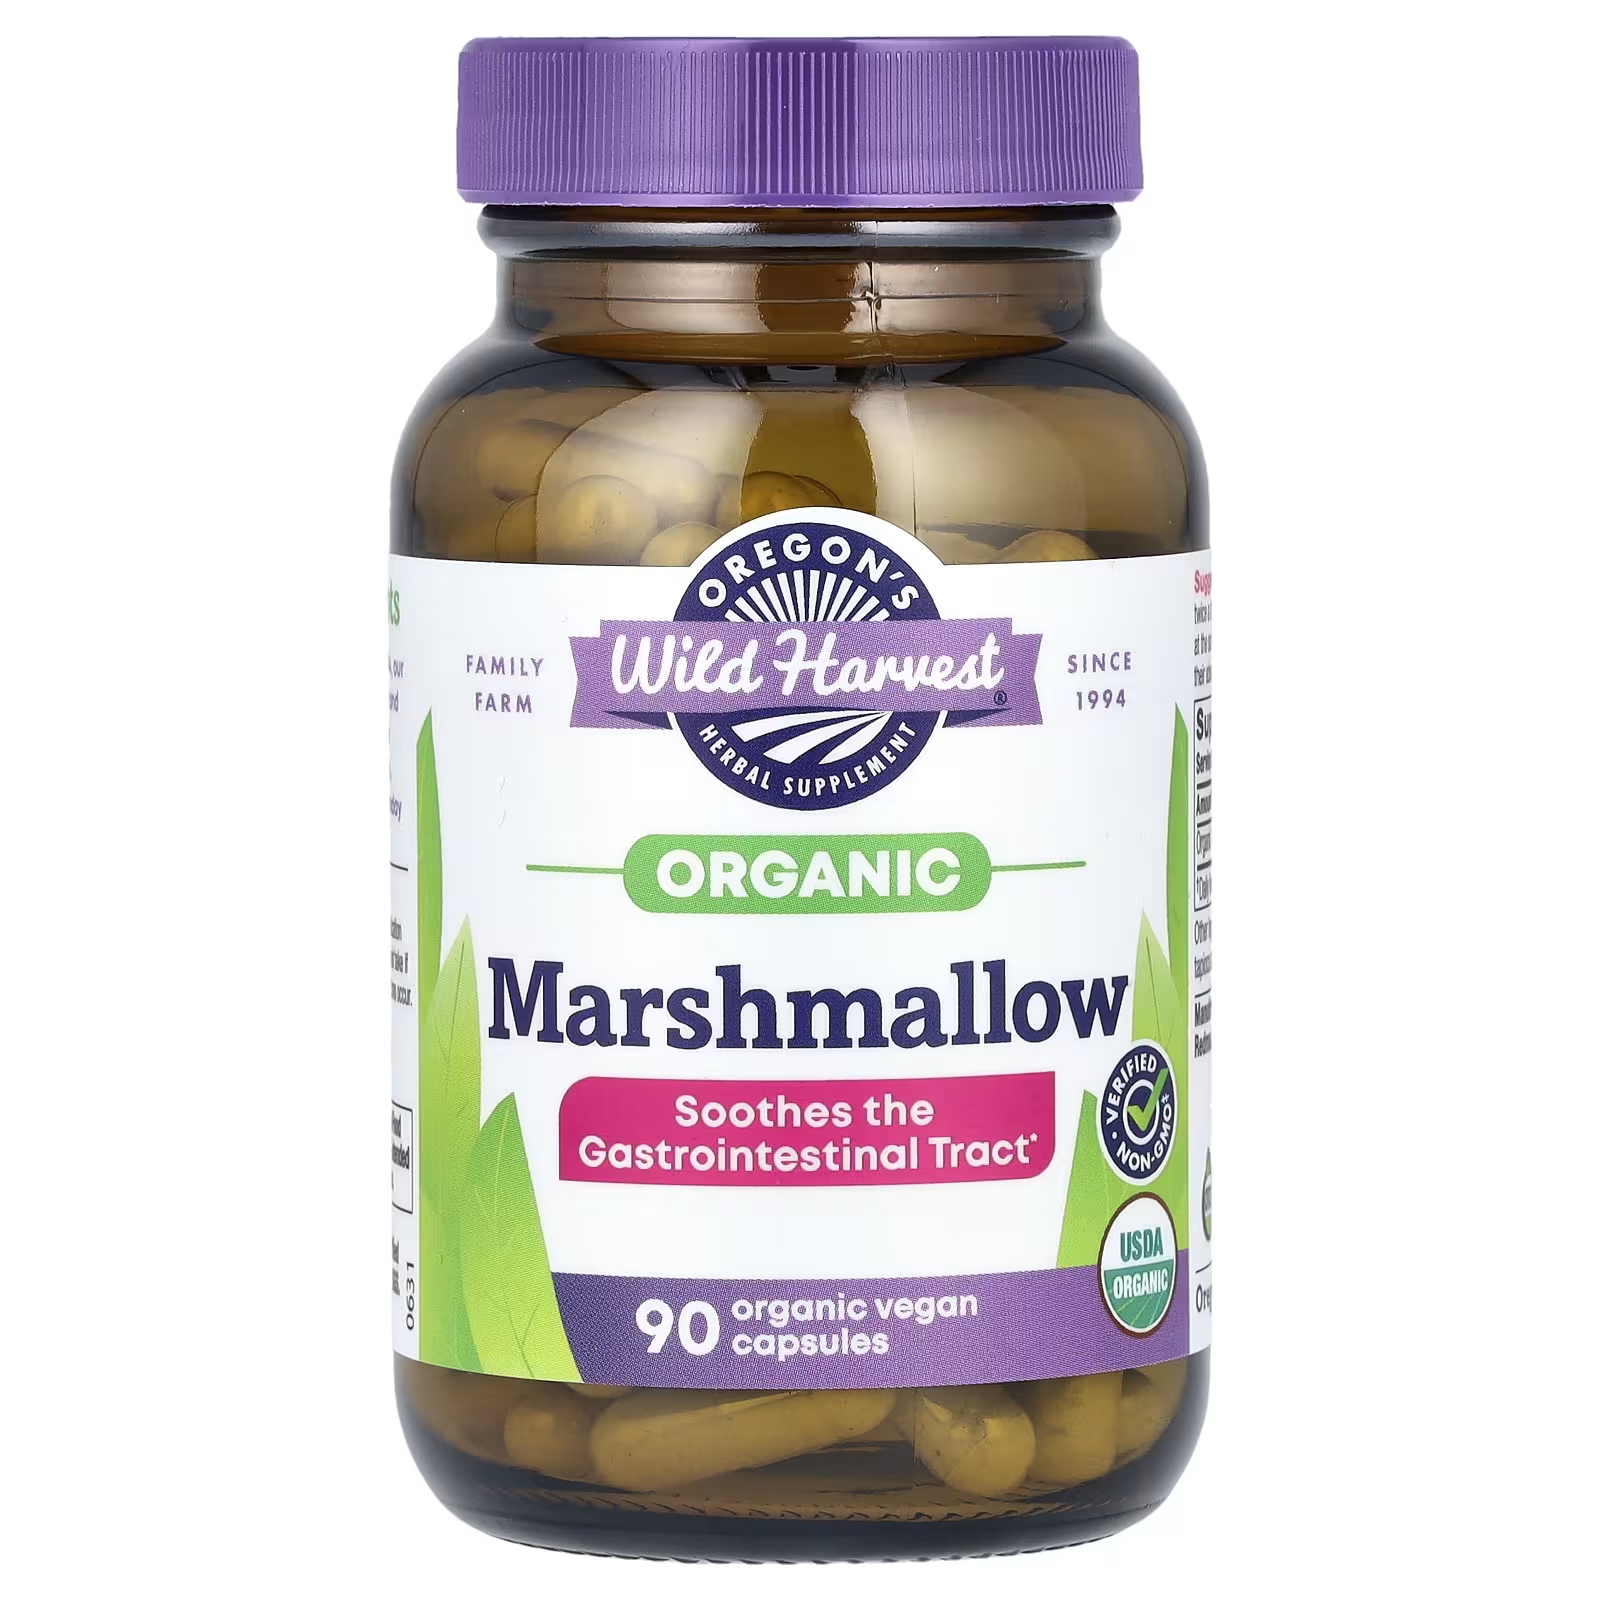 Травяная добавка Oregons Wild Harvest Organic Marshmallow, 90 органических веганских капсул аптека сбор желудочно кишечный фитогастрол 2г n20